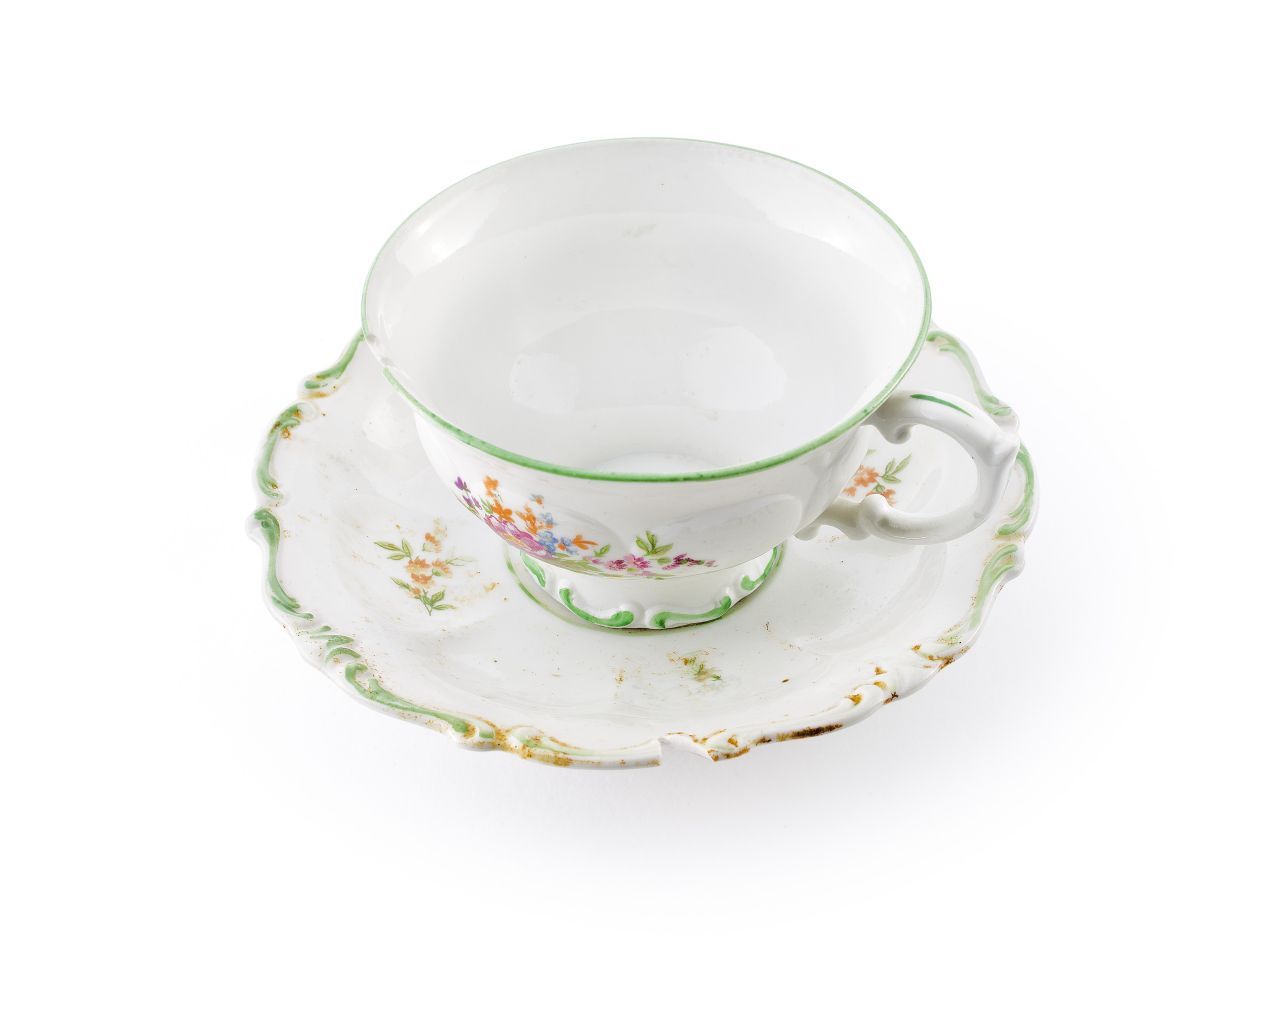 Weiße Tasse und Untertasse mit grünen Rändern aus Prozellan. Auf der Tasse ist ein buntes Blumenbouquet abgebildet. Tassenhenkel und der Rand der Untertasse habe eine geschnörkelte Form.